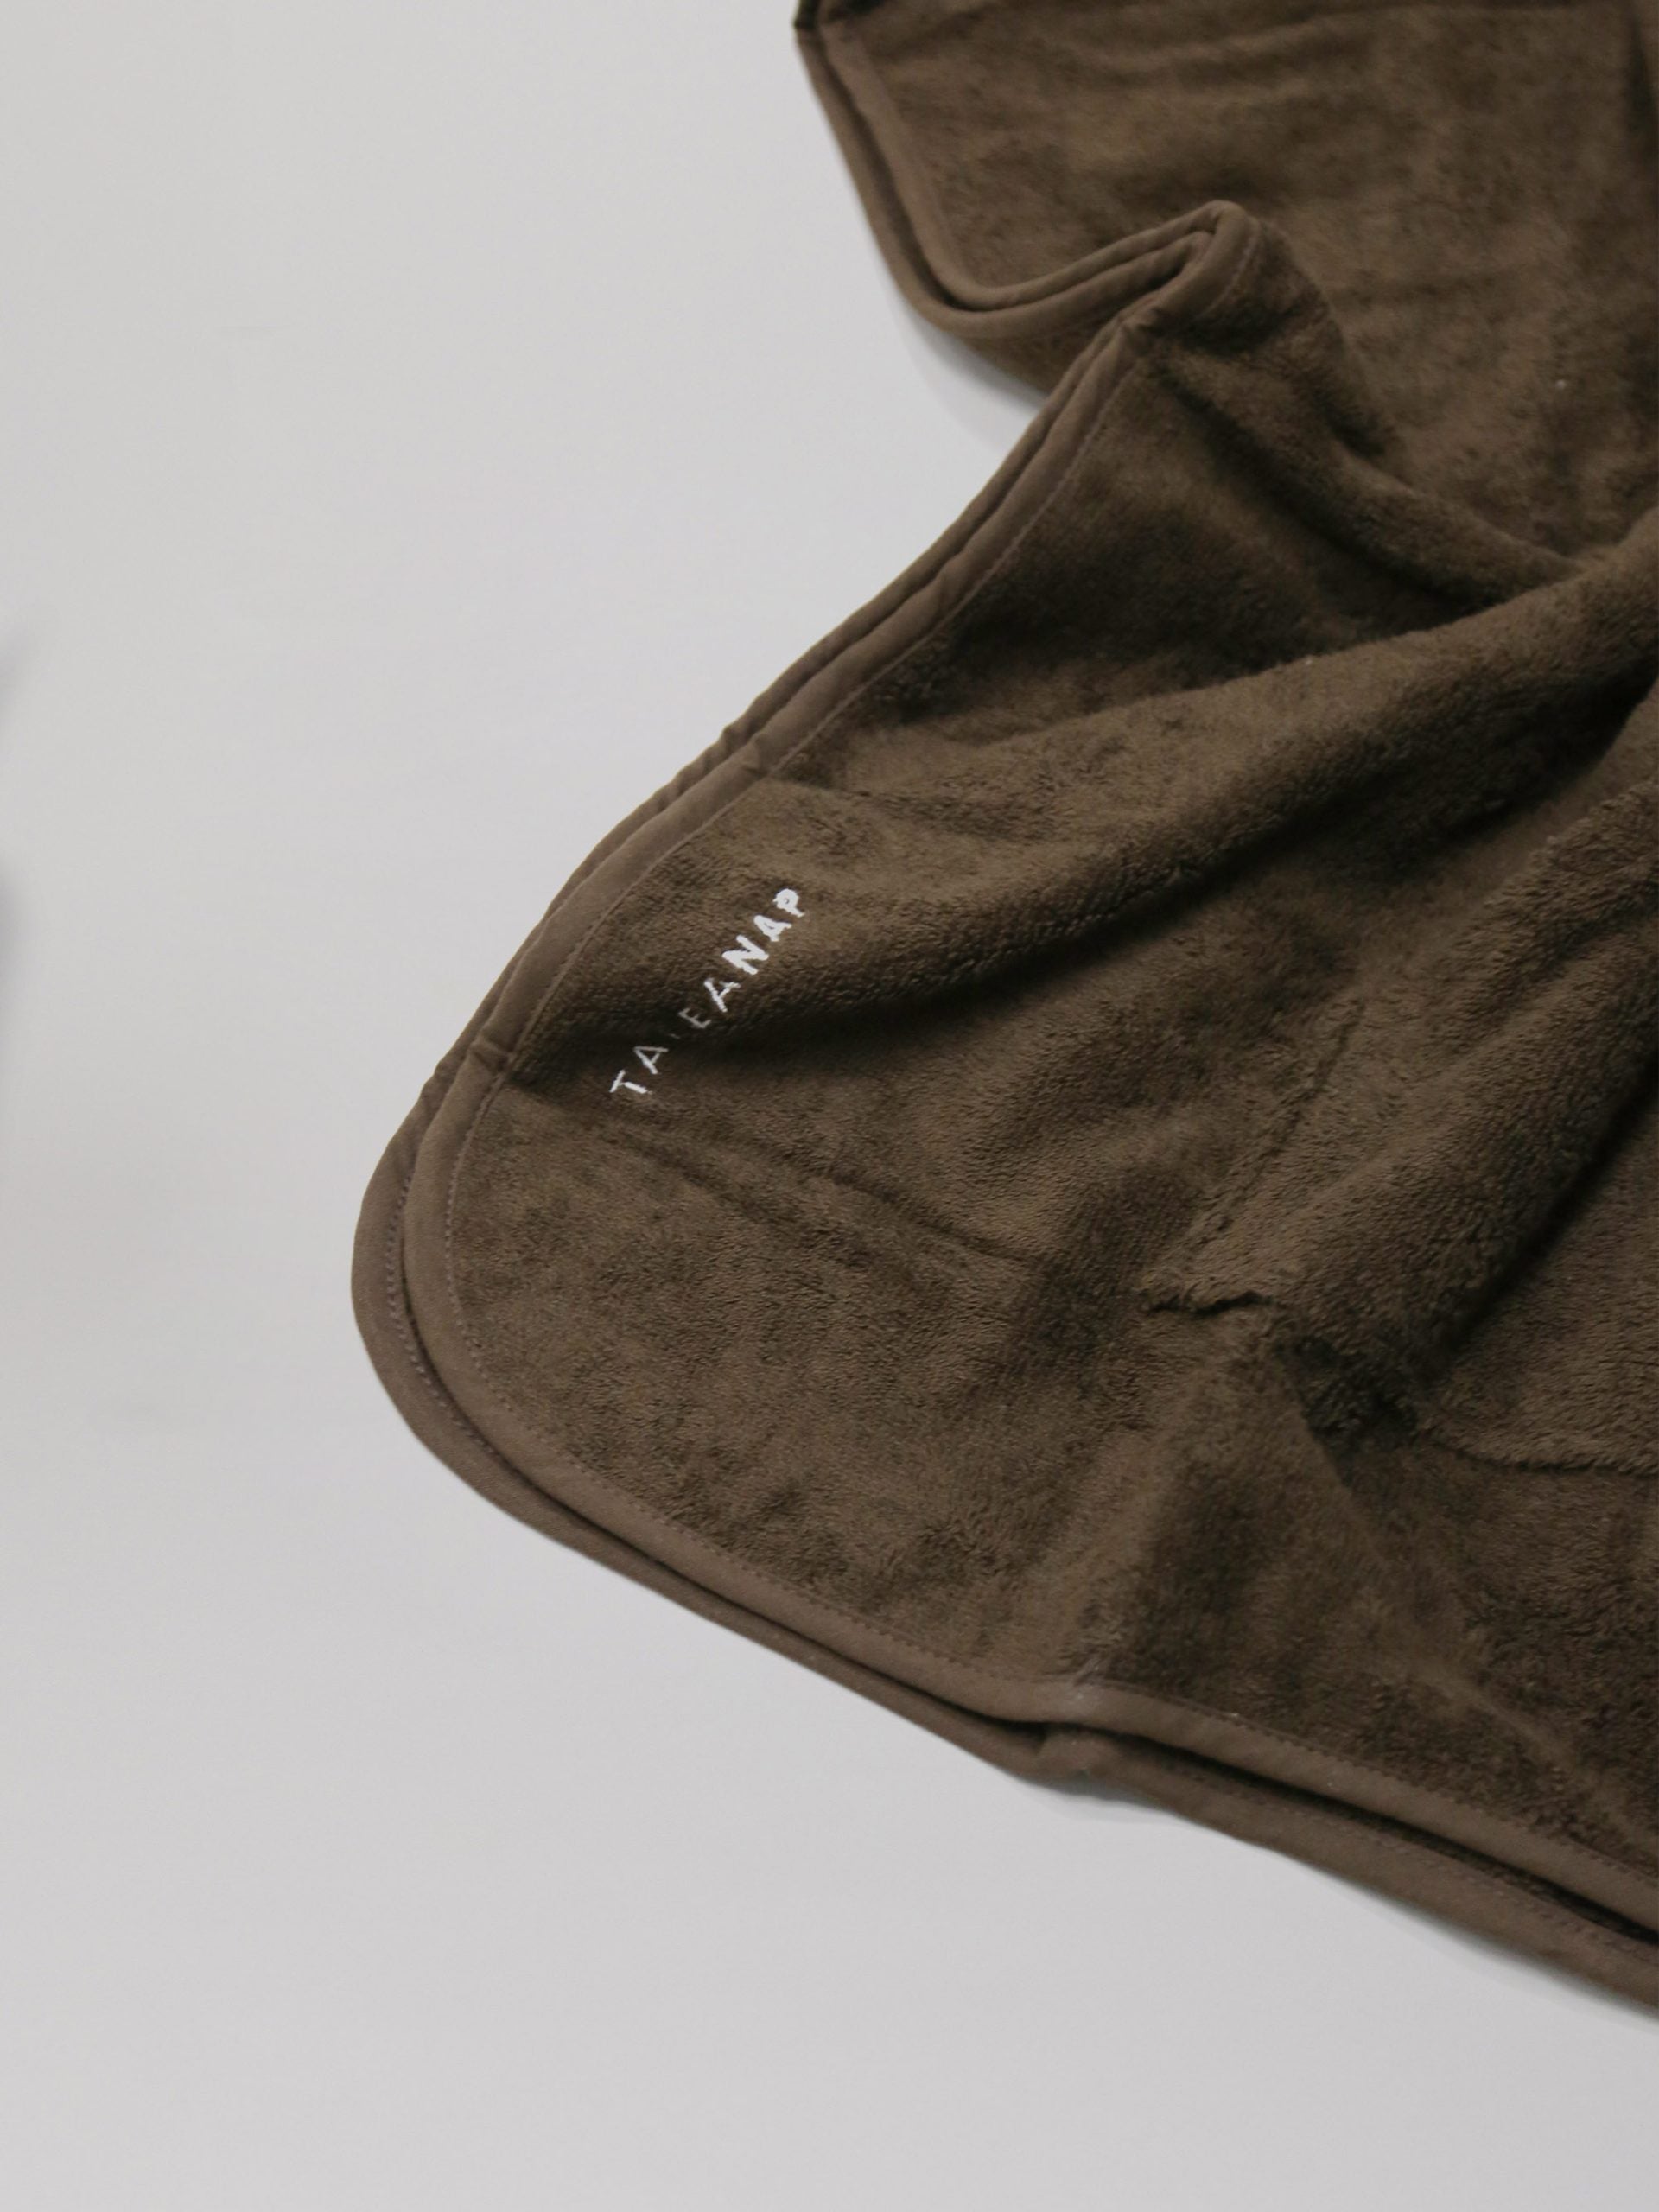 פינת מגבת פונצ'ו לילדים בצבע חום פרושה על רקע אפור